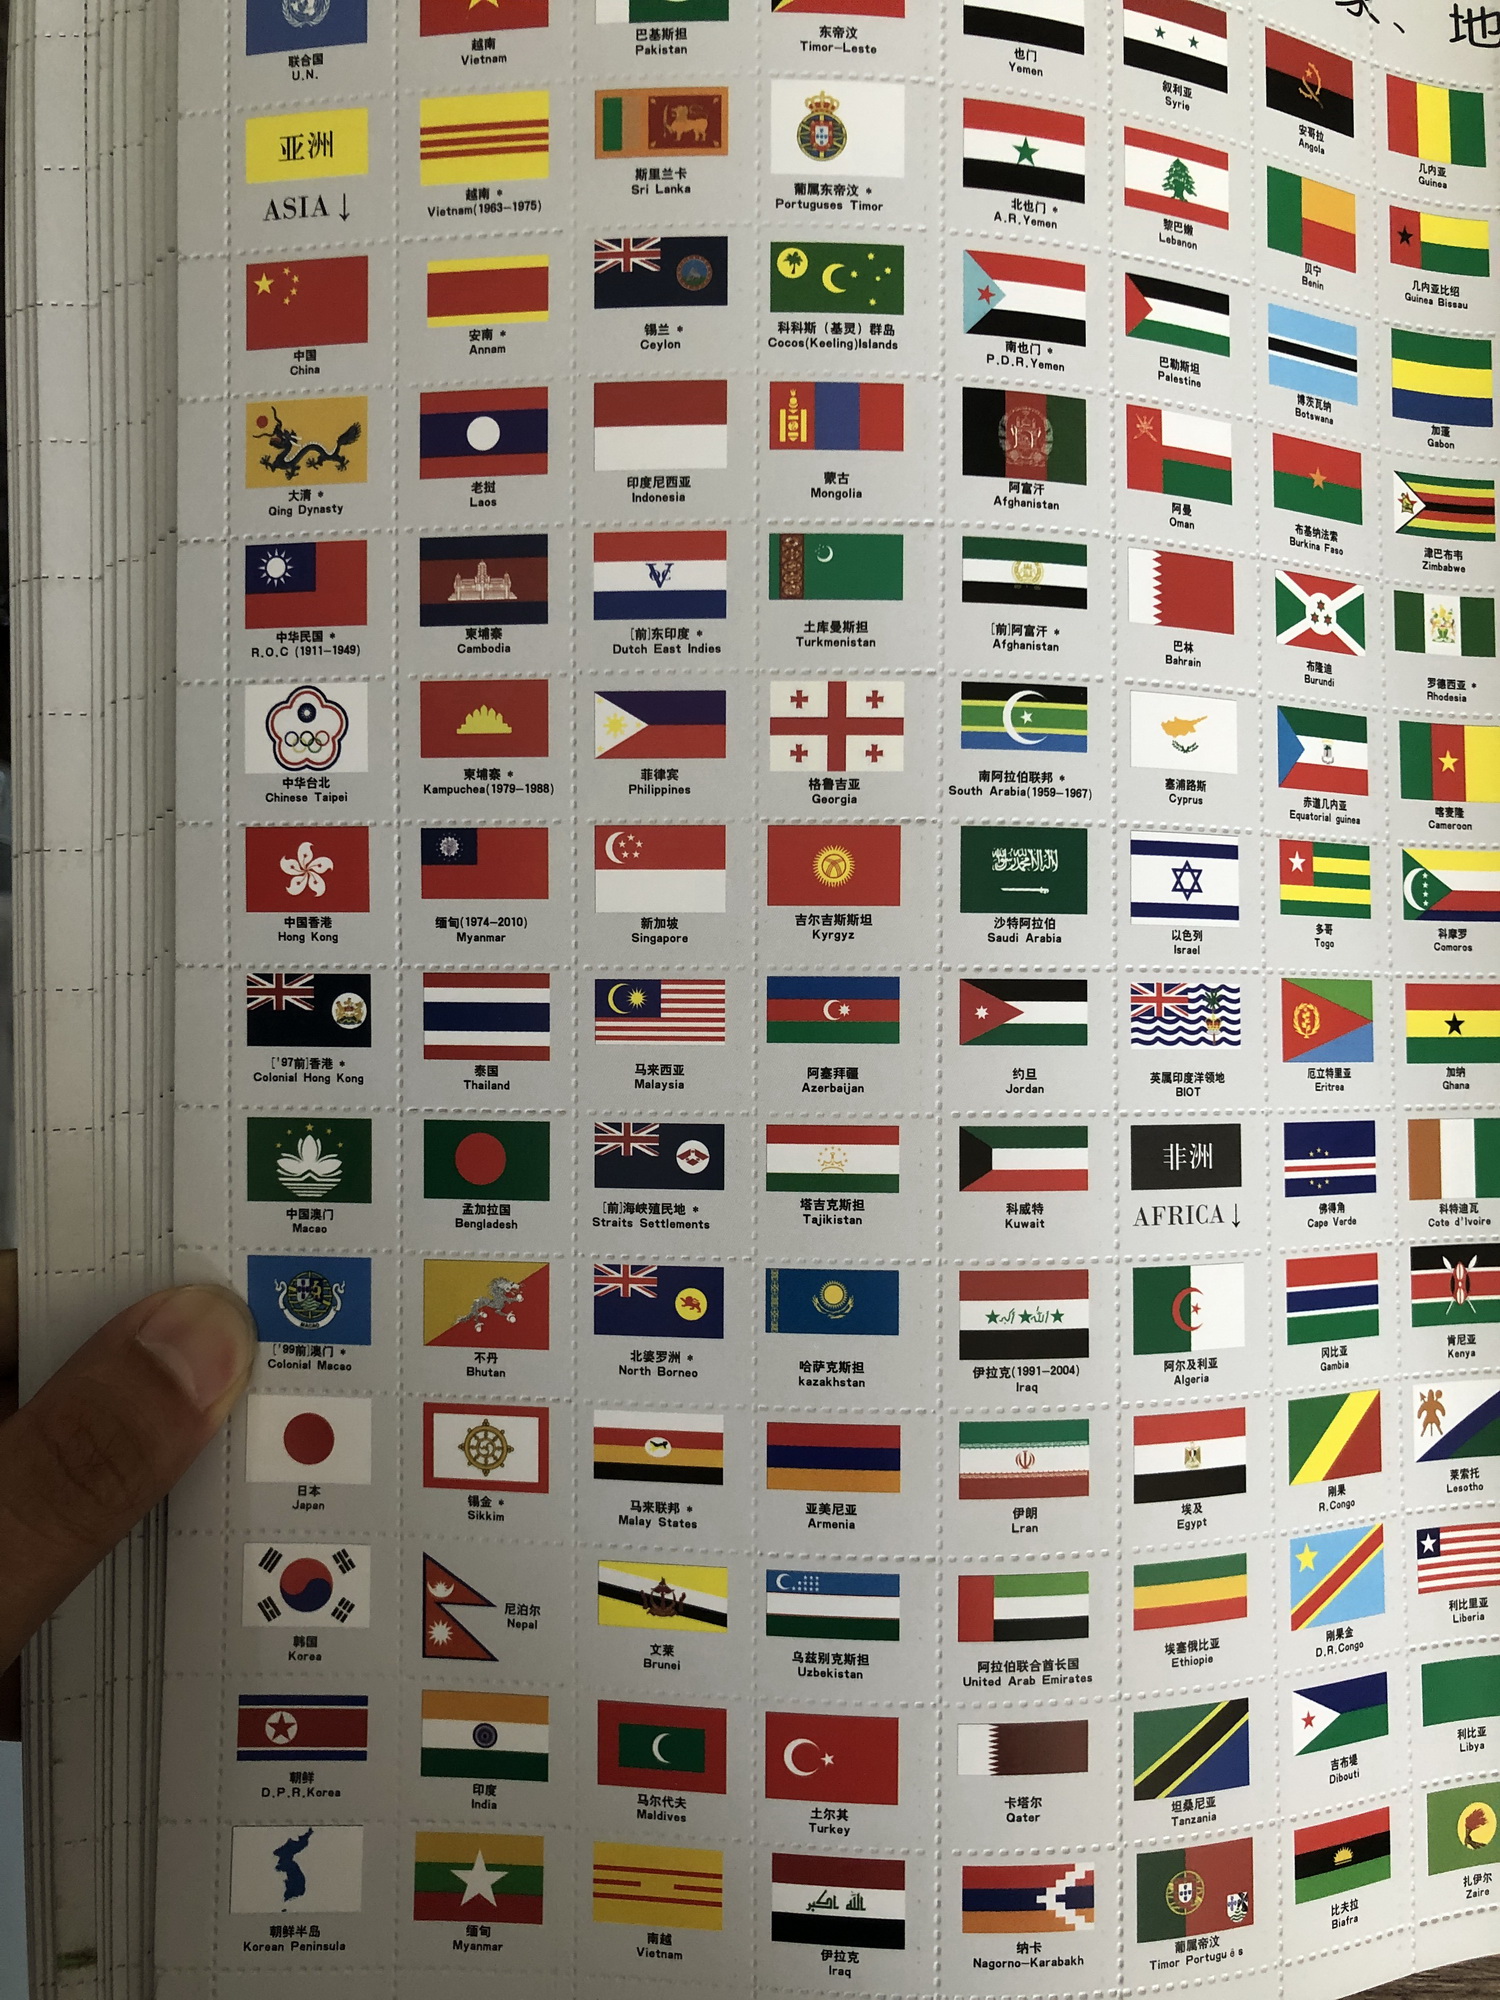 Bộ quốc kỳ các nước trên thế giới: Trên thế giới này, có rất nhiều quốc kỳ đặc trưng của từng quốc gia. Chúng tôi mang đến cho bạn bộ sưu tập quốc kỳ đa dạng của các quốc gia trên toàn thế giới, giúp bạn khám phá và tìm hiểu về văn hoá của mỗi quốc gia. Hãy sưu tập và tạo ra bộ sưu tập quốc kỳ của riêng bạn với những bức ảnh đẹp mắt nhất!